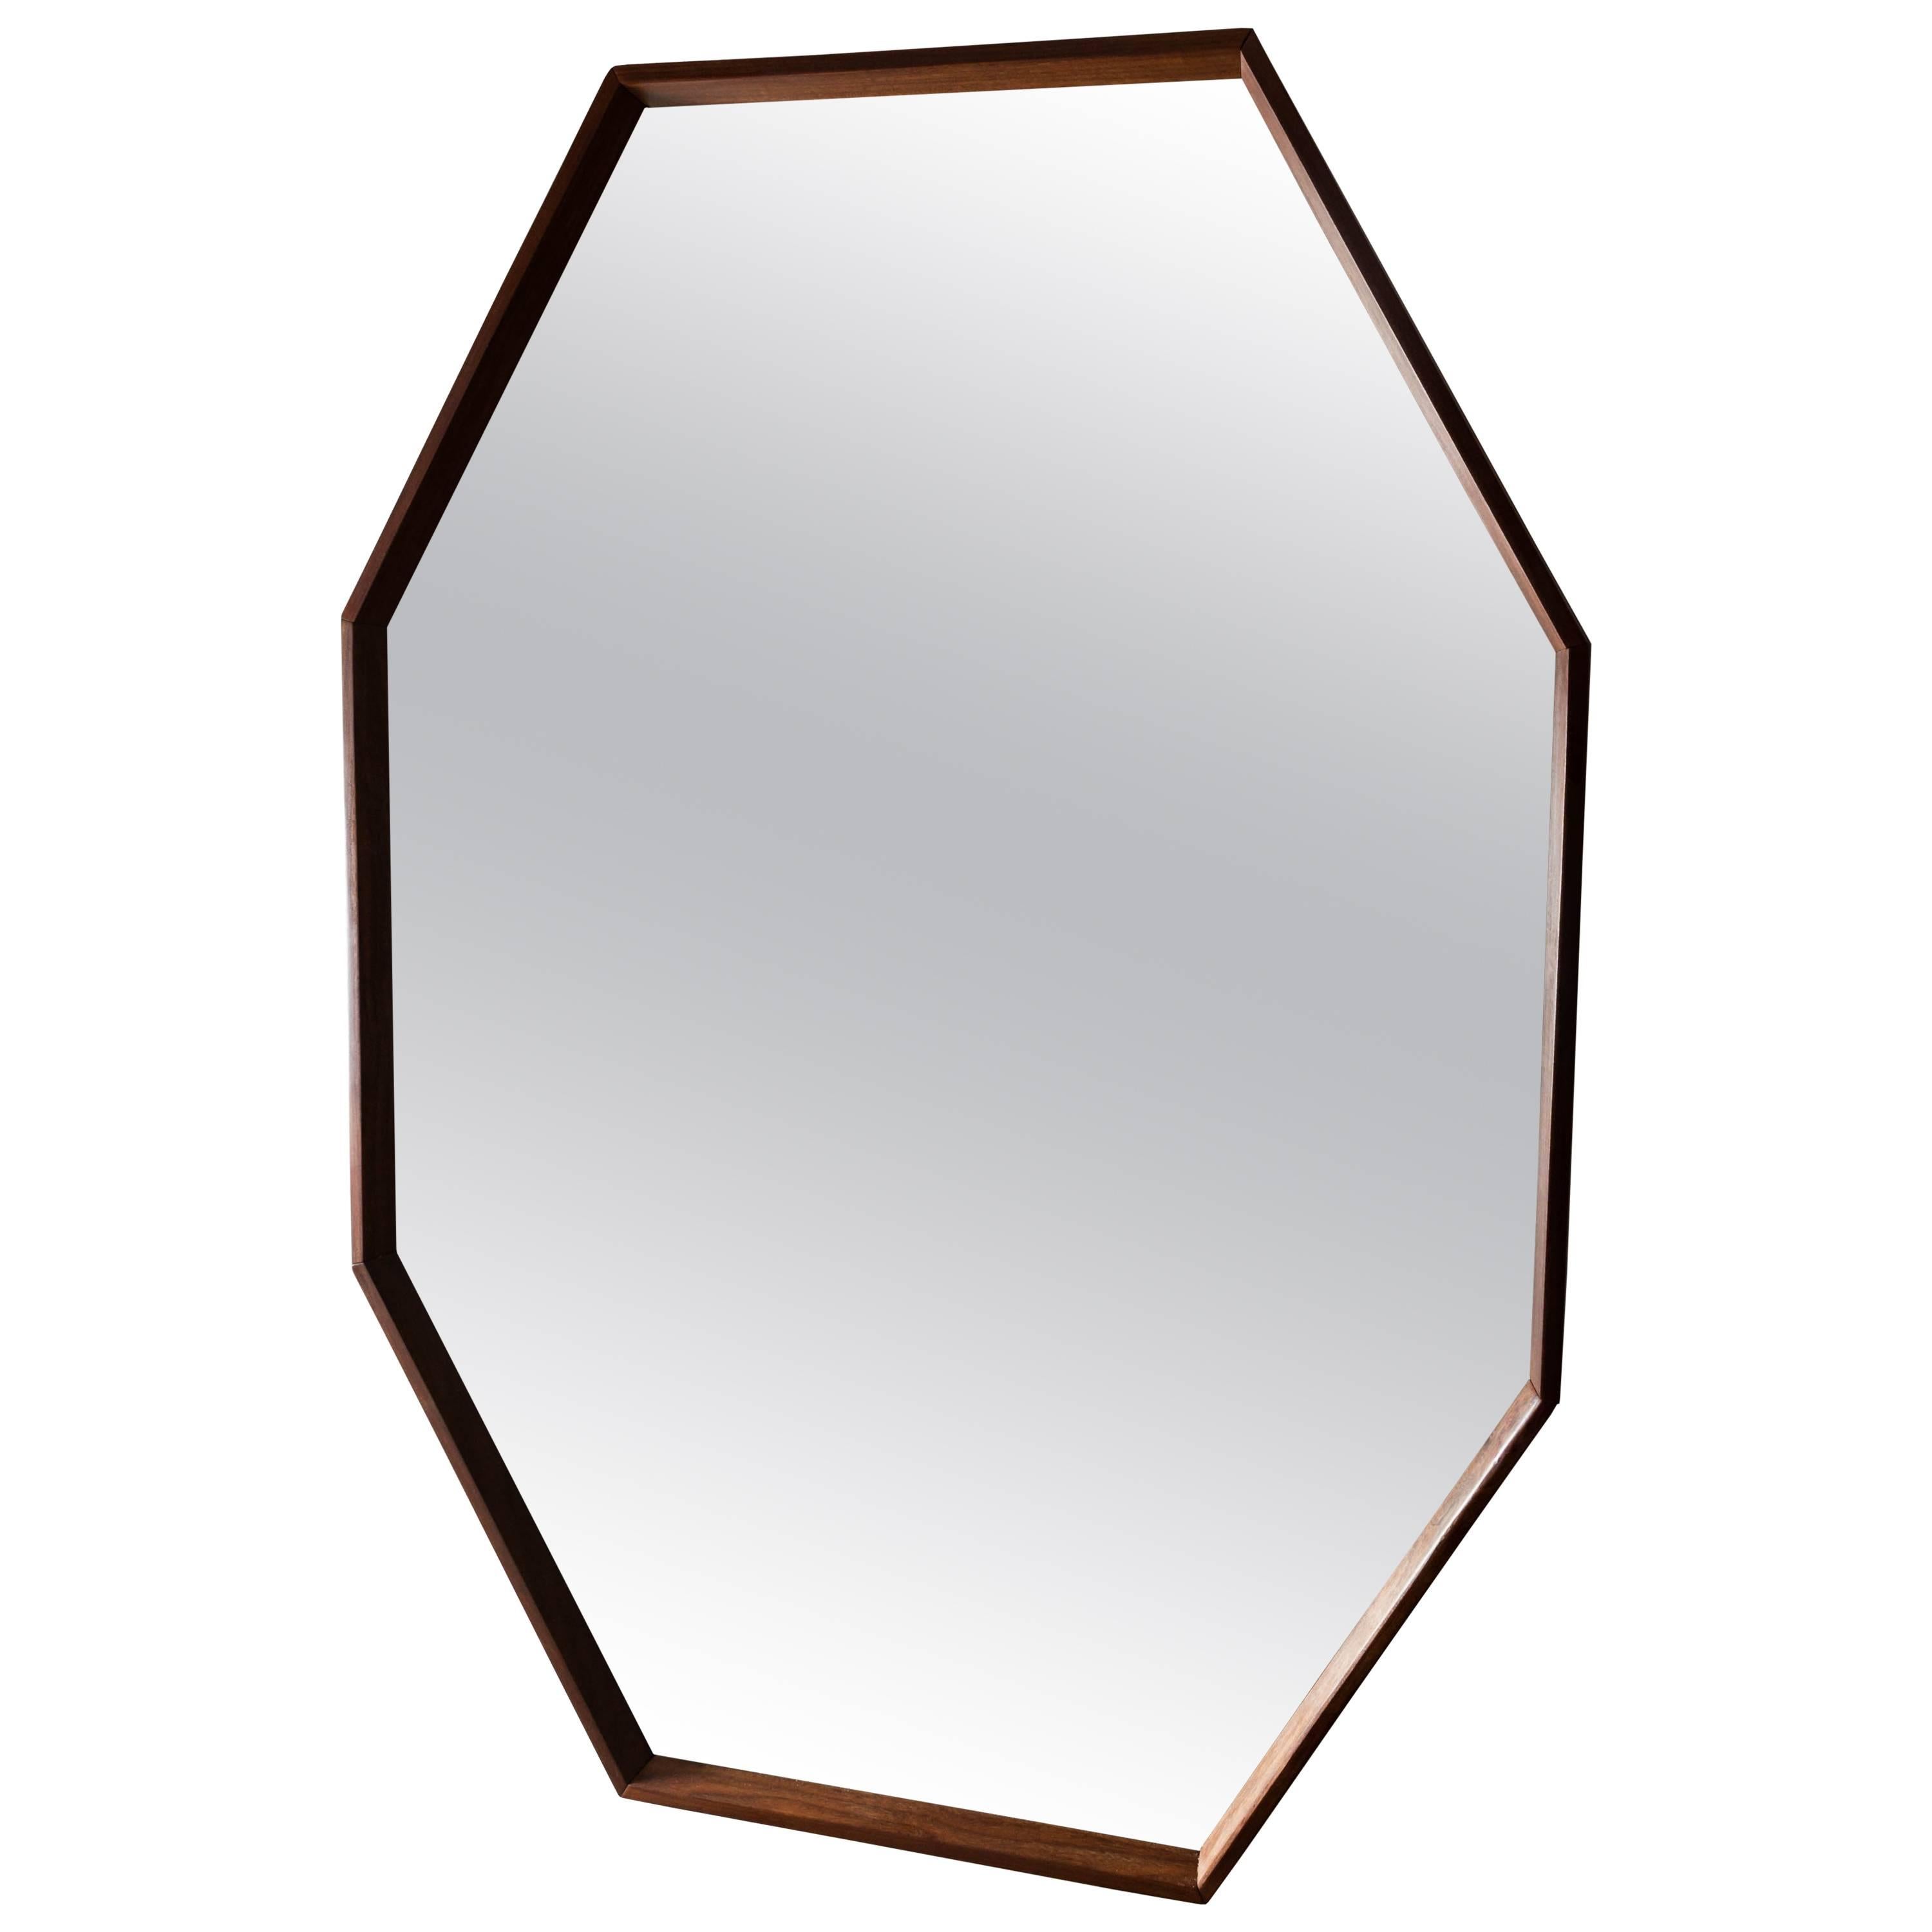 Octagonal Walnut Surround Mirror